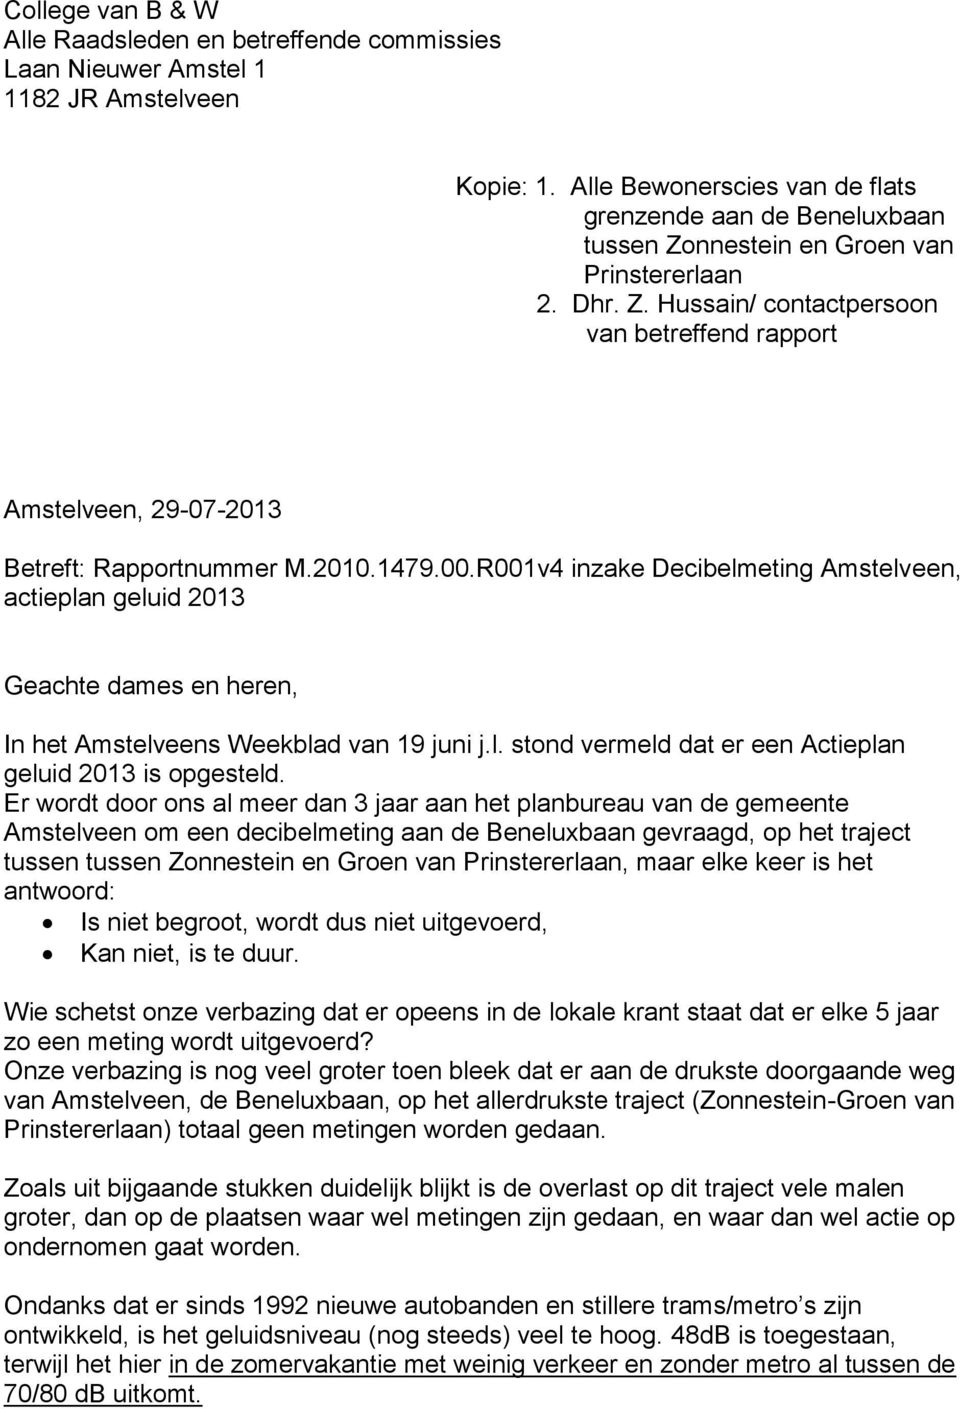 2010.1479.00.R001v4 inzake Decibelmeting Amstelveen, actieplan geluid 2013 Geachte dames en heren, In het Amstelveens Weekblad van 19 juni j.l. stond vermeld dat er een Actieplan geluid 2013 is opgesteld.